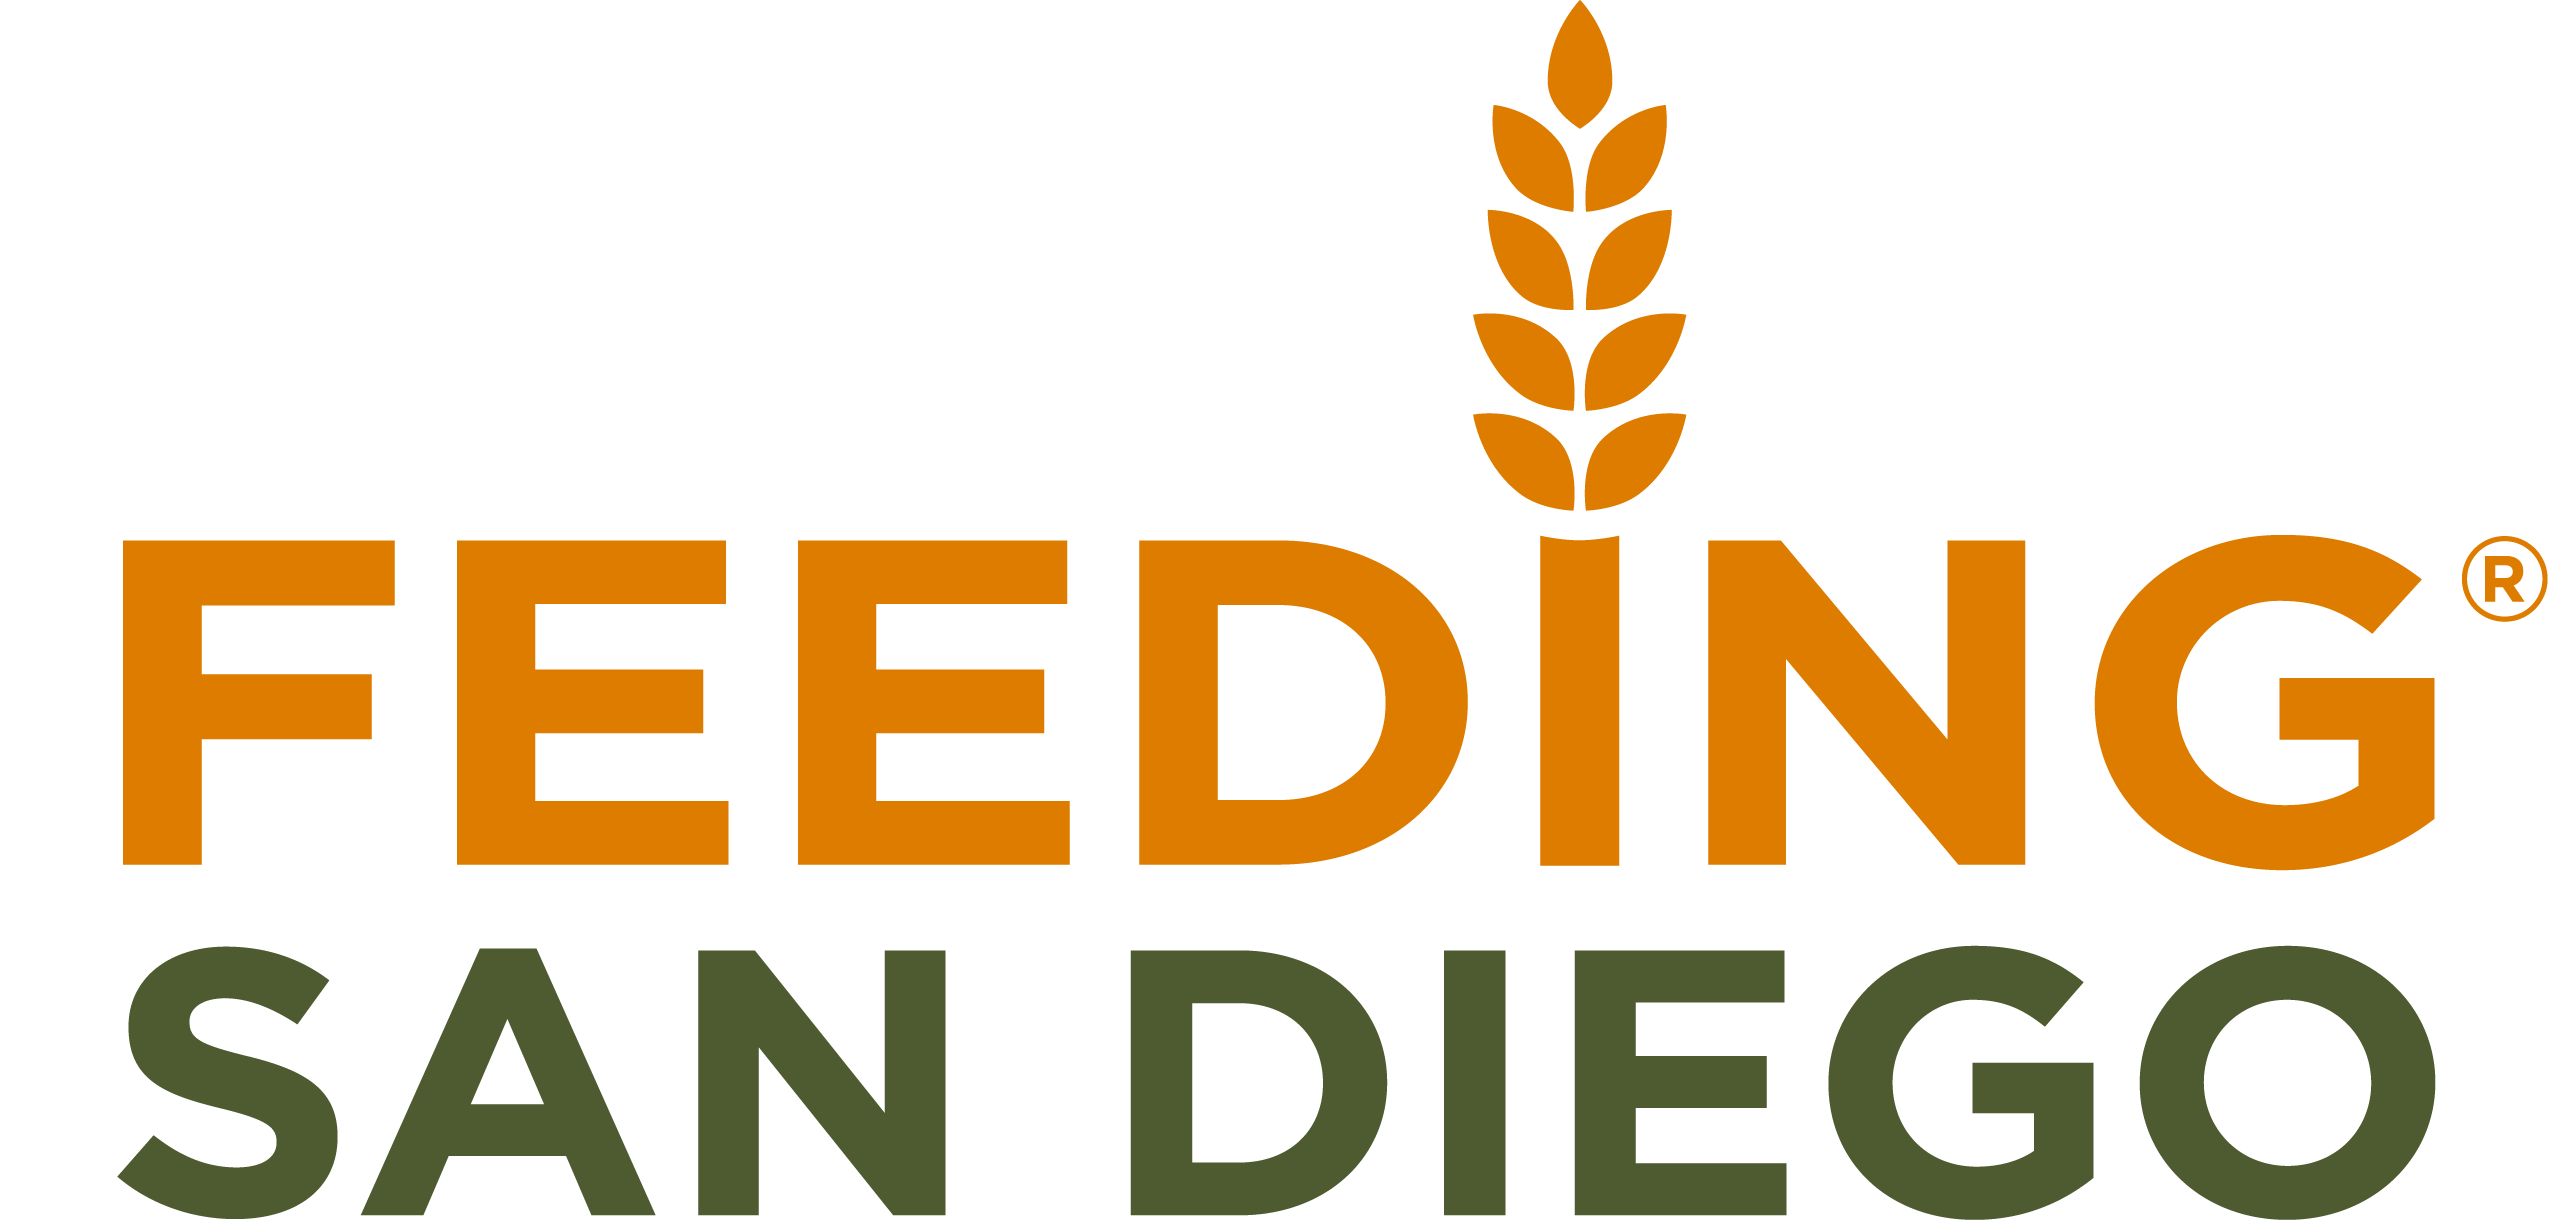 Feeding San Diego Logo